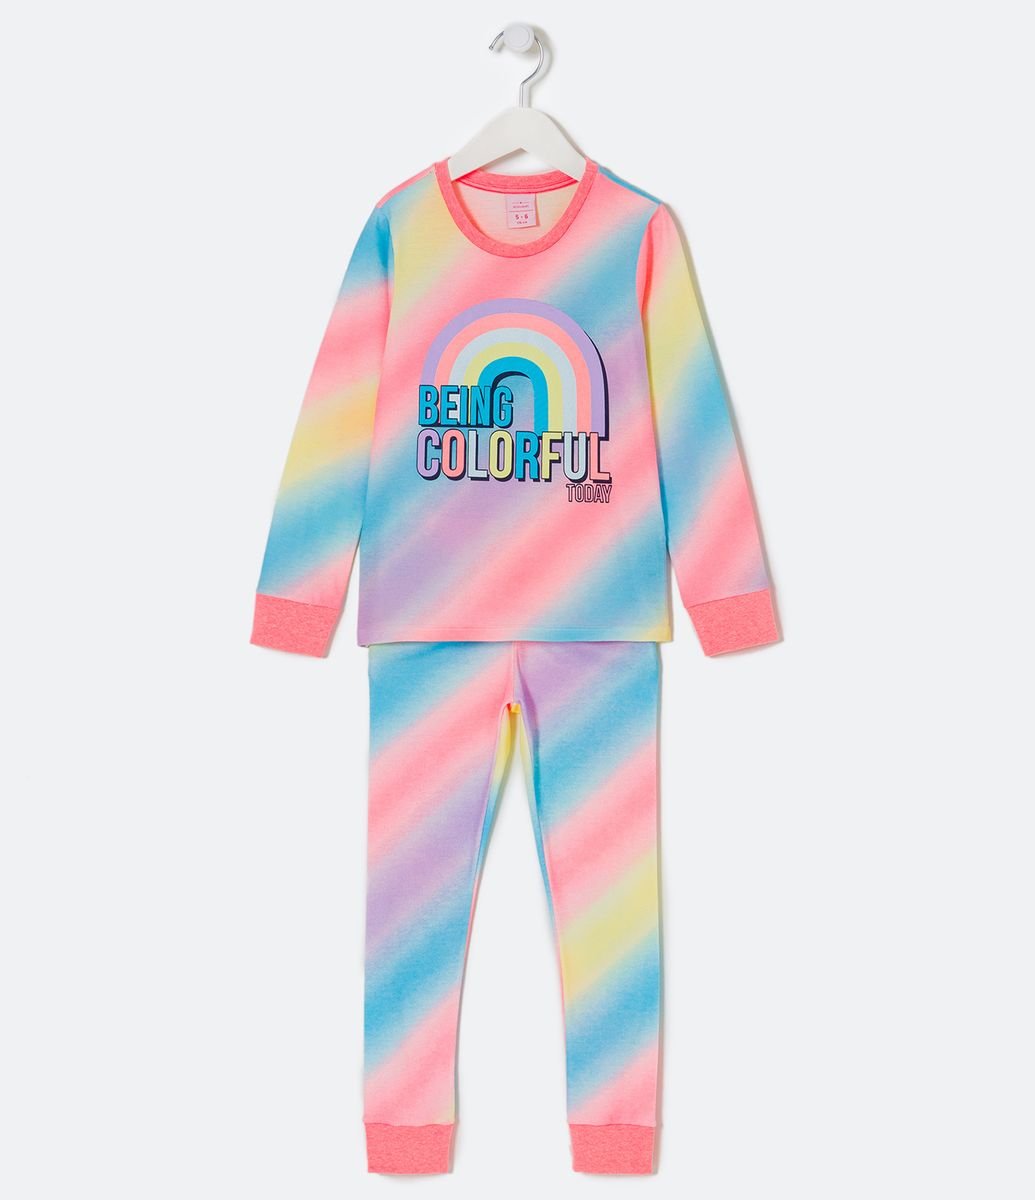 Pijama Longo Infantil com Estampa Stitch e Mangas Coloridas - Tam 4 a 14  Anos Branco Neve